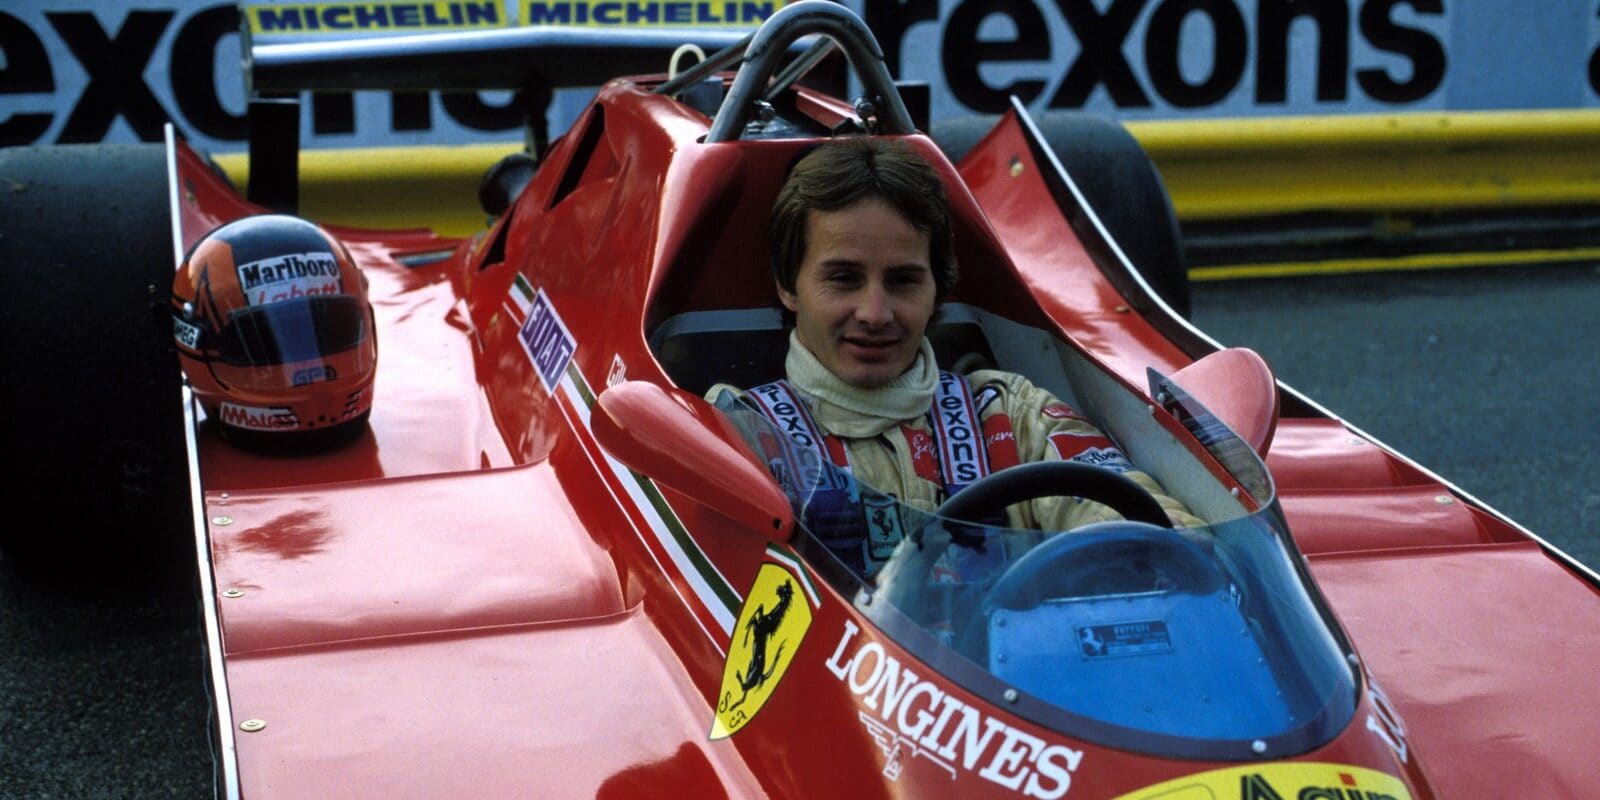 Gilles Villeneuve by dnes oslavil 70. narozeniny